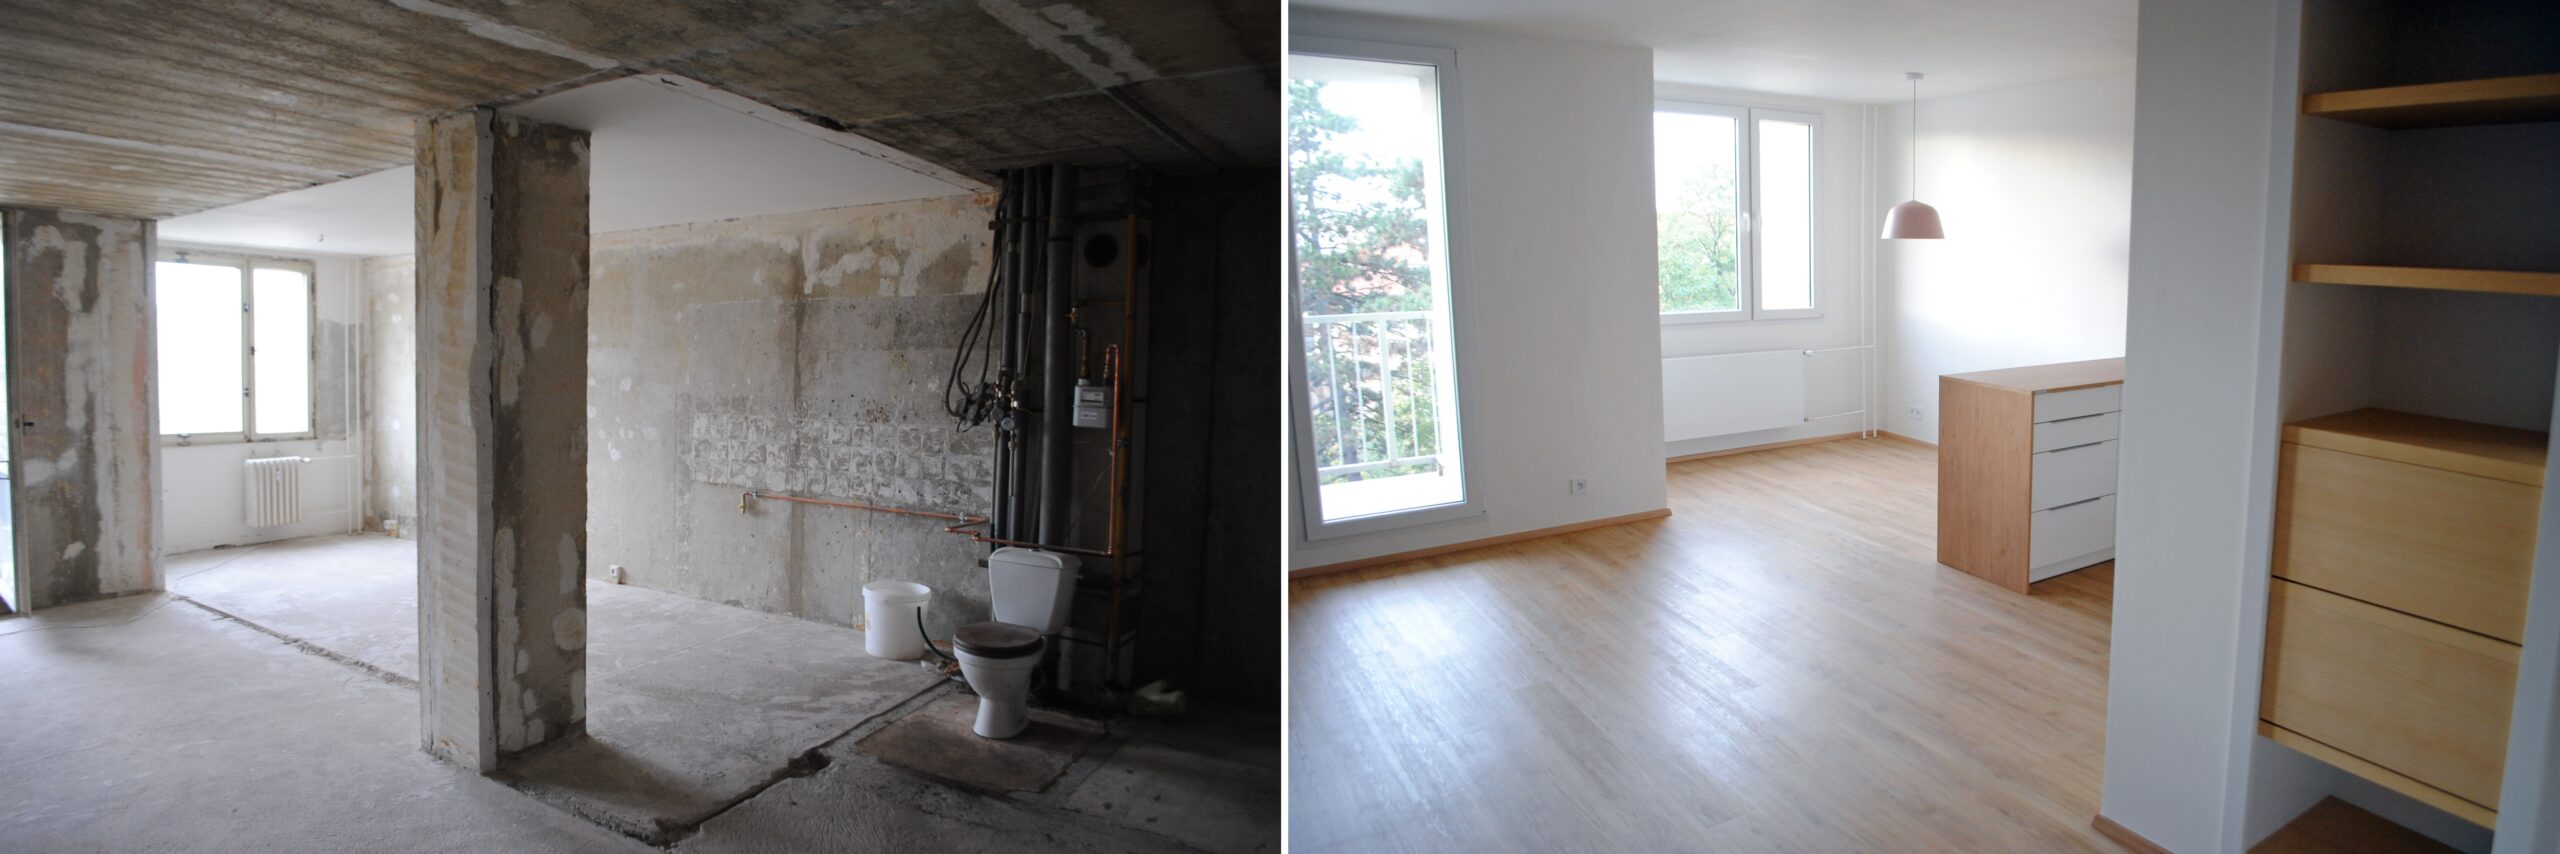 Pohled do bytu před a po rekonstrukci